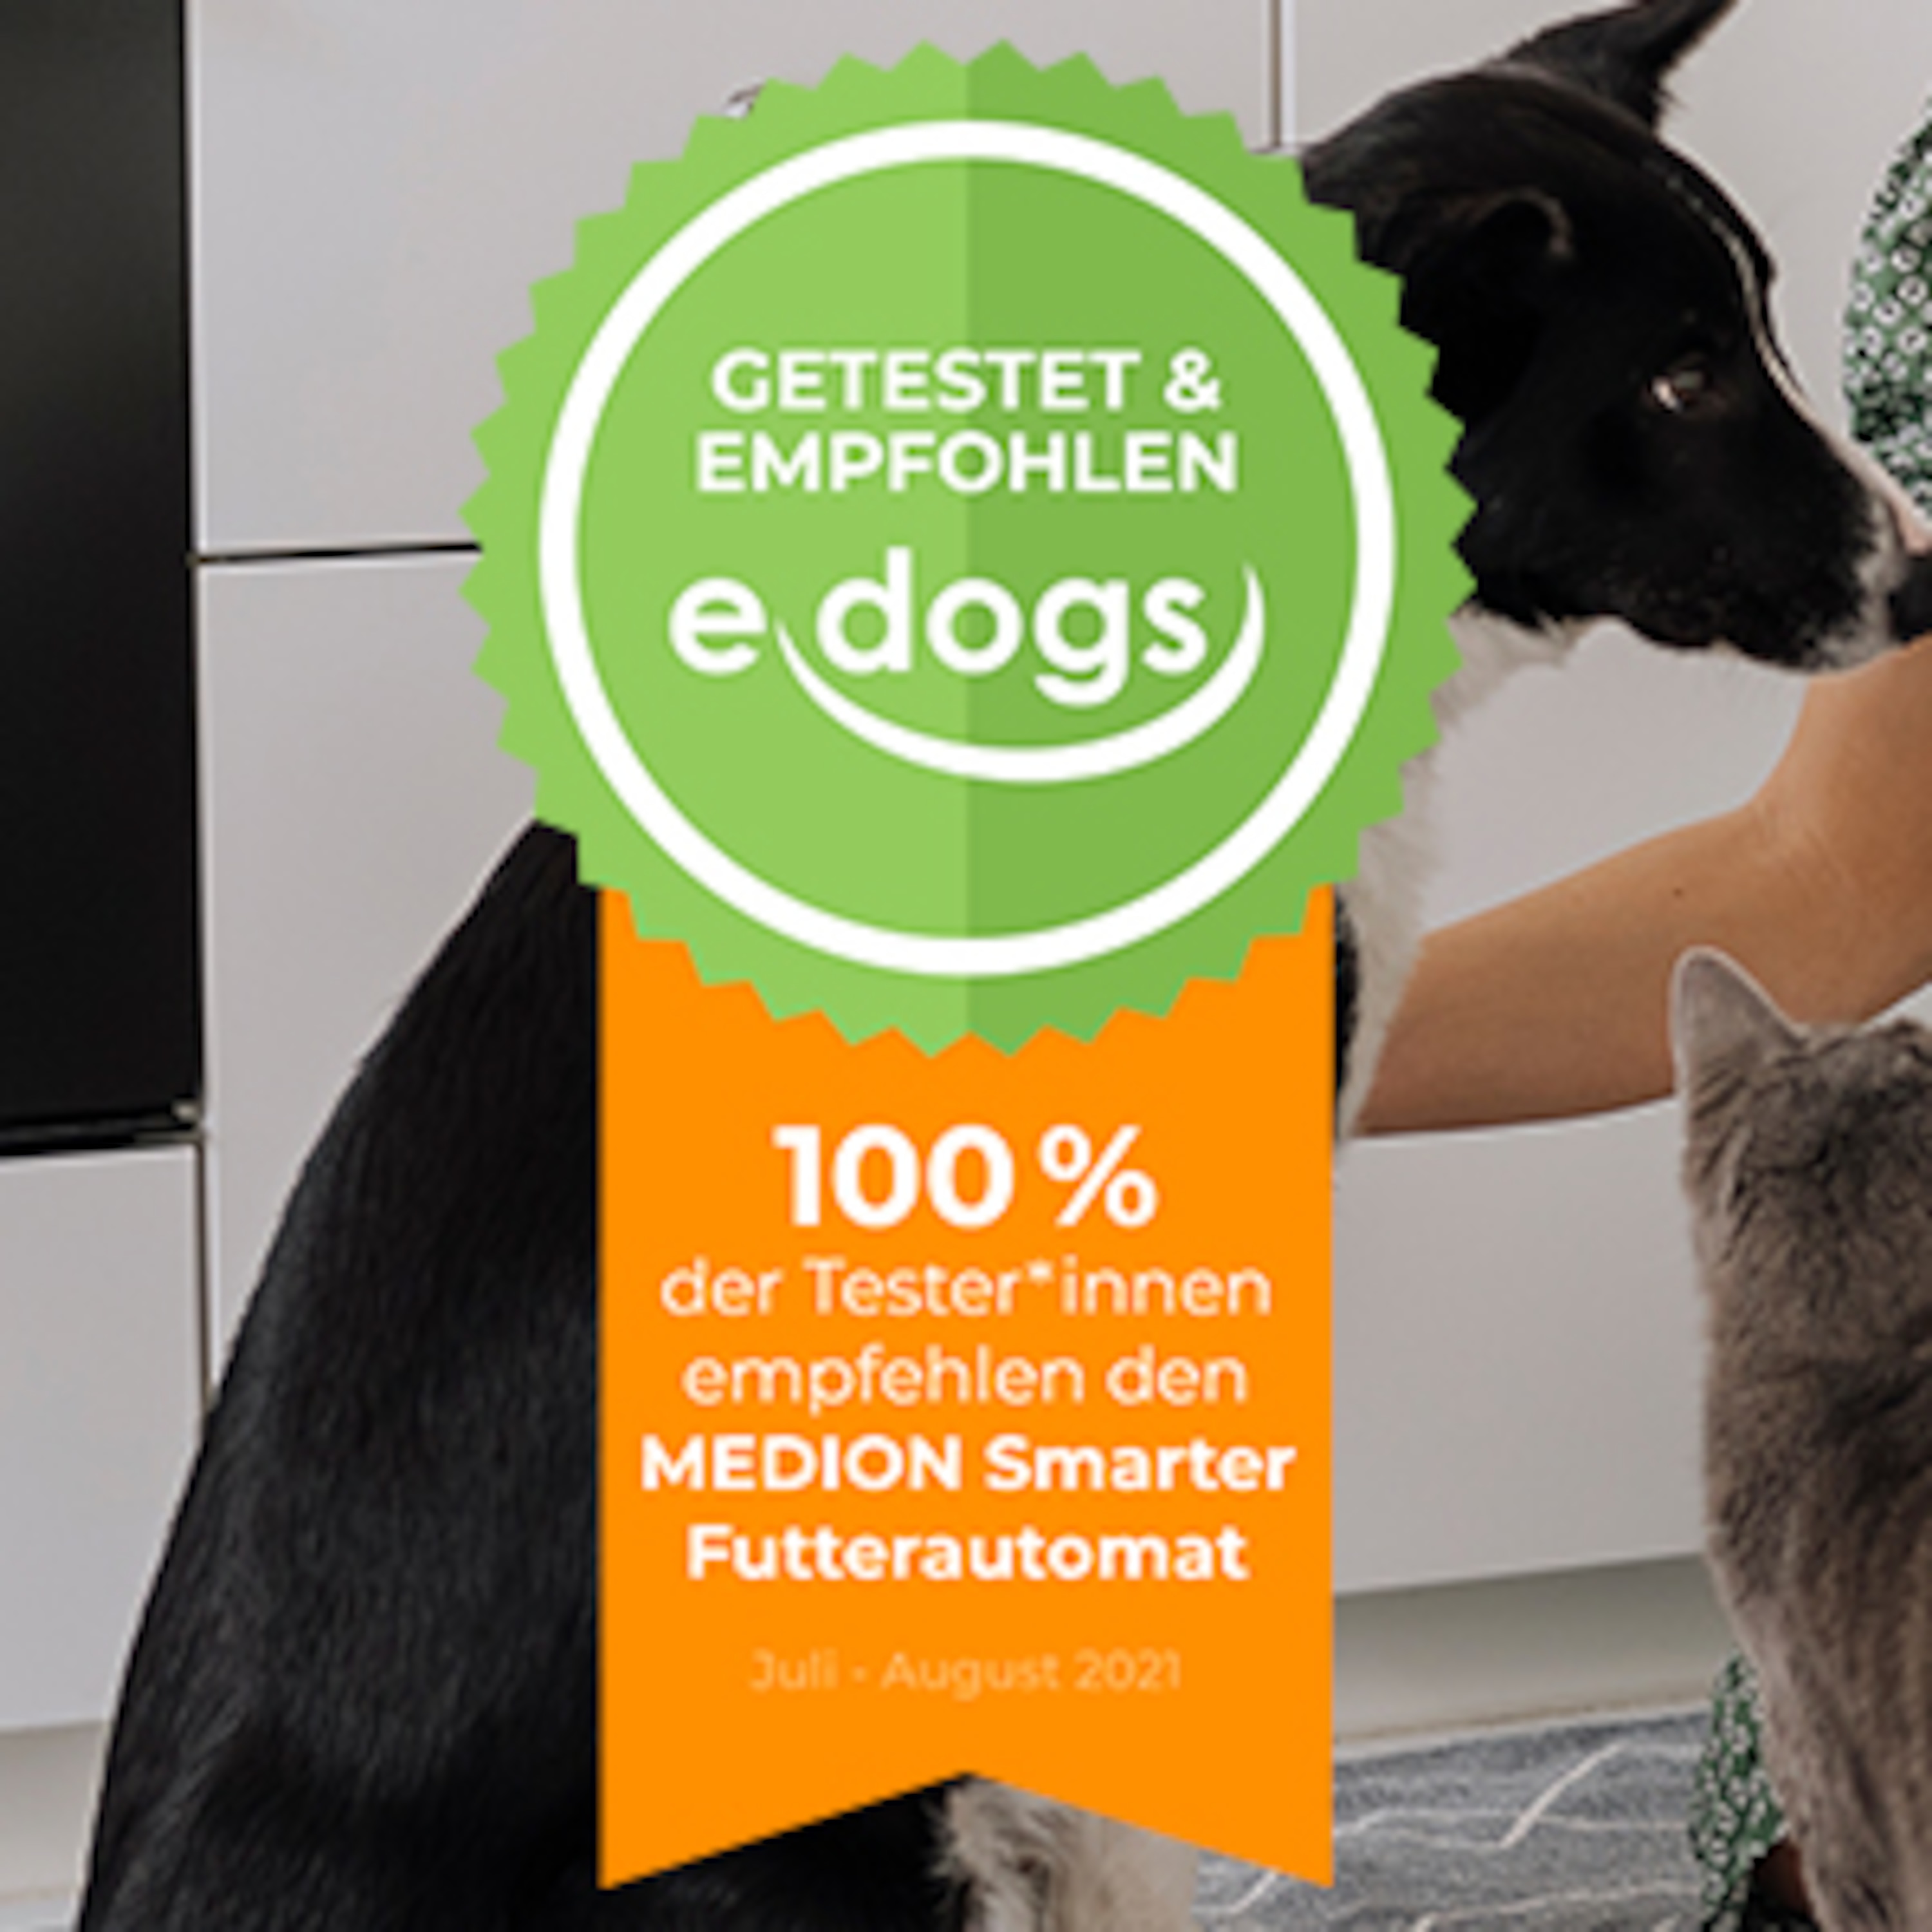 Wir empfehlen den Futterautomaten jedem Hunde- & Katzenbesitzer weiter!